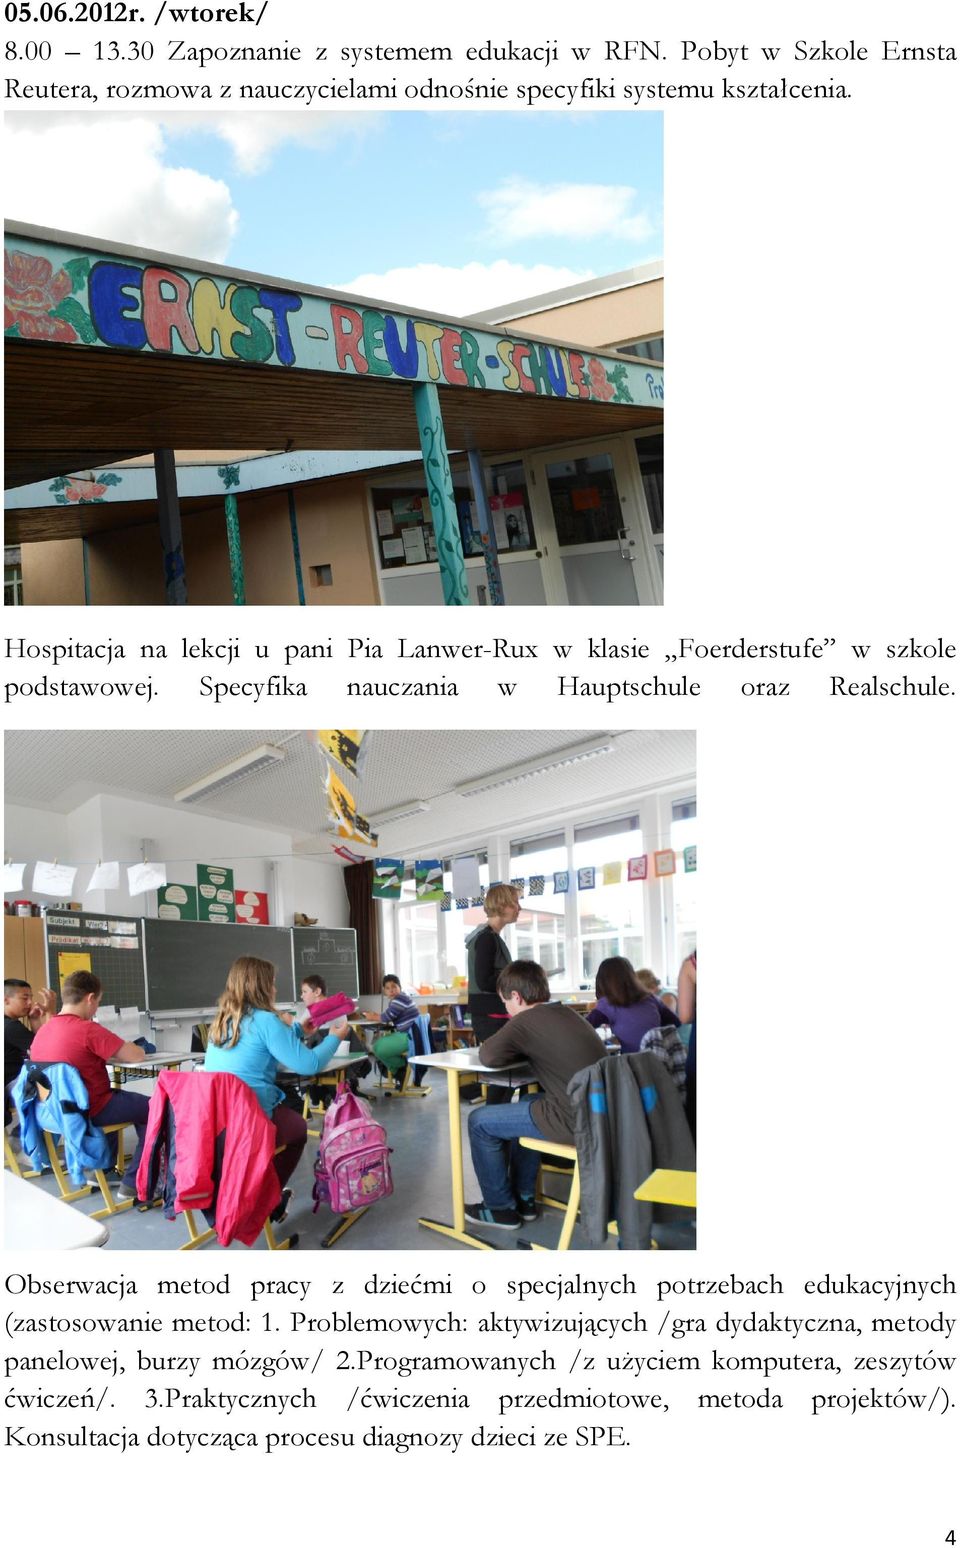 Hospitacja na lekcji u pani Pia Lanwer-Rux w klasie Foerderstufe w szkole podstawowej. Specyfika nauczania w Hauptschule oraz Realschule.